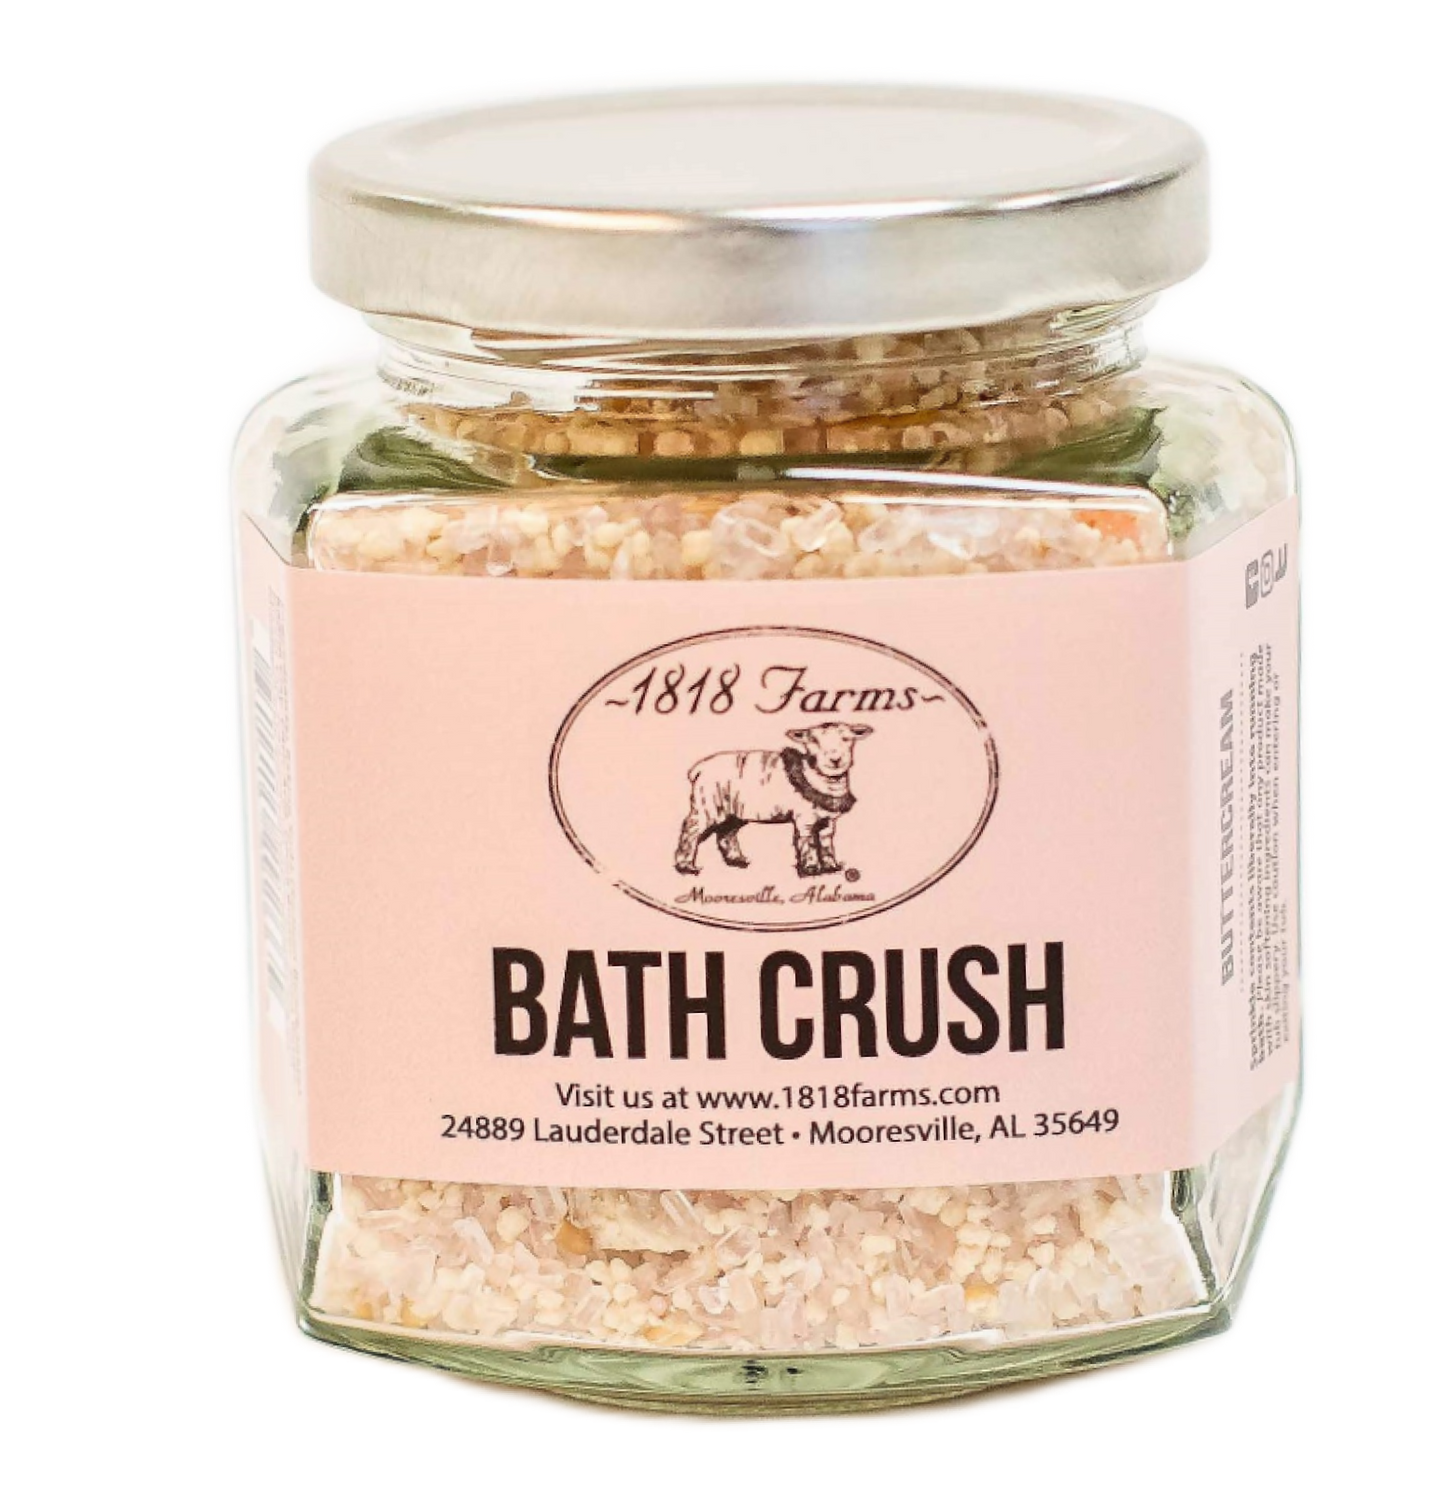 Bath Crush Bath Teas & Truffles 1818 Farms Buttercream  